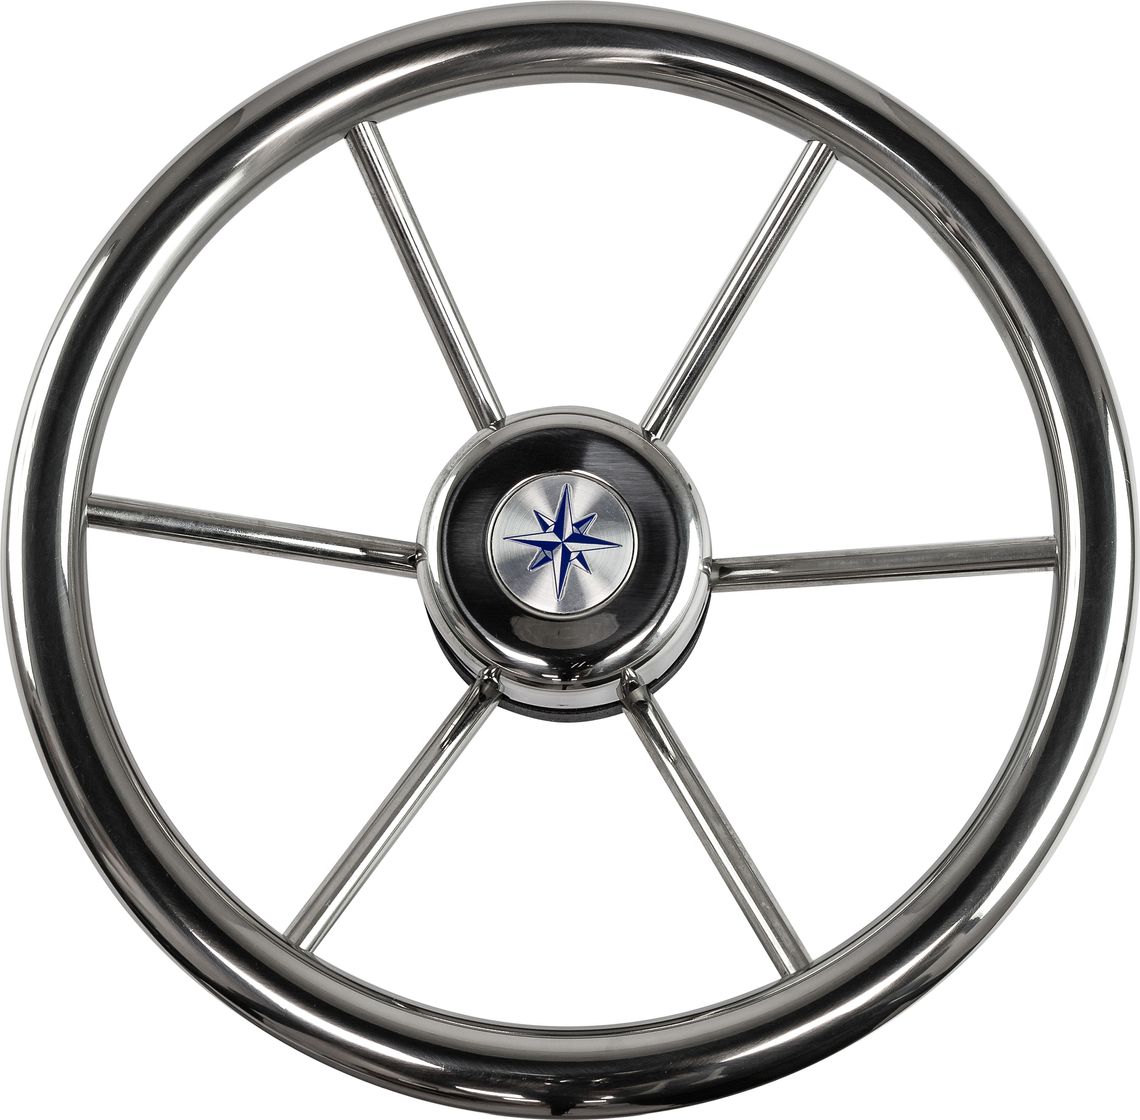 Рулевое колесо LEADER INOX нержавеющий обод серебряные спицы д. 320 мм VN7332-22 рулевое колесо leader plast обод серебряные спицы д 330 мм vn8330 01